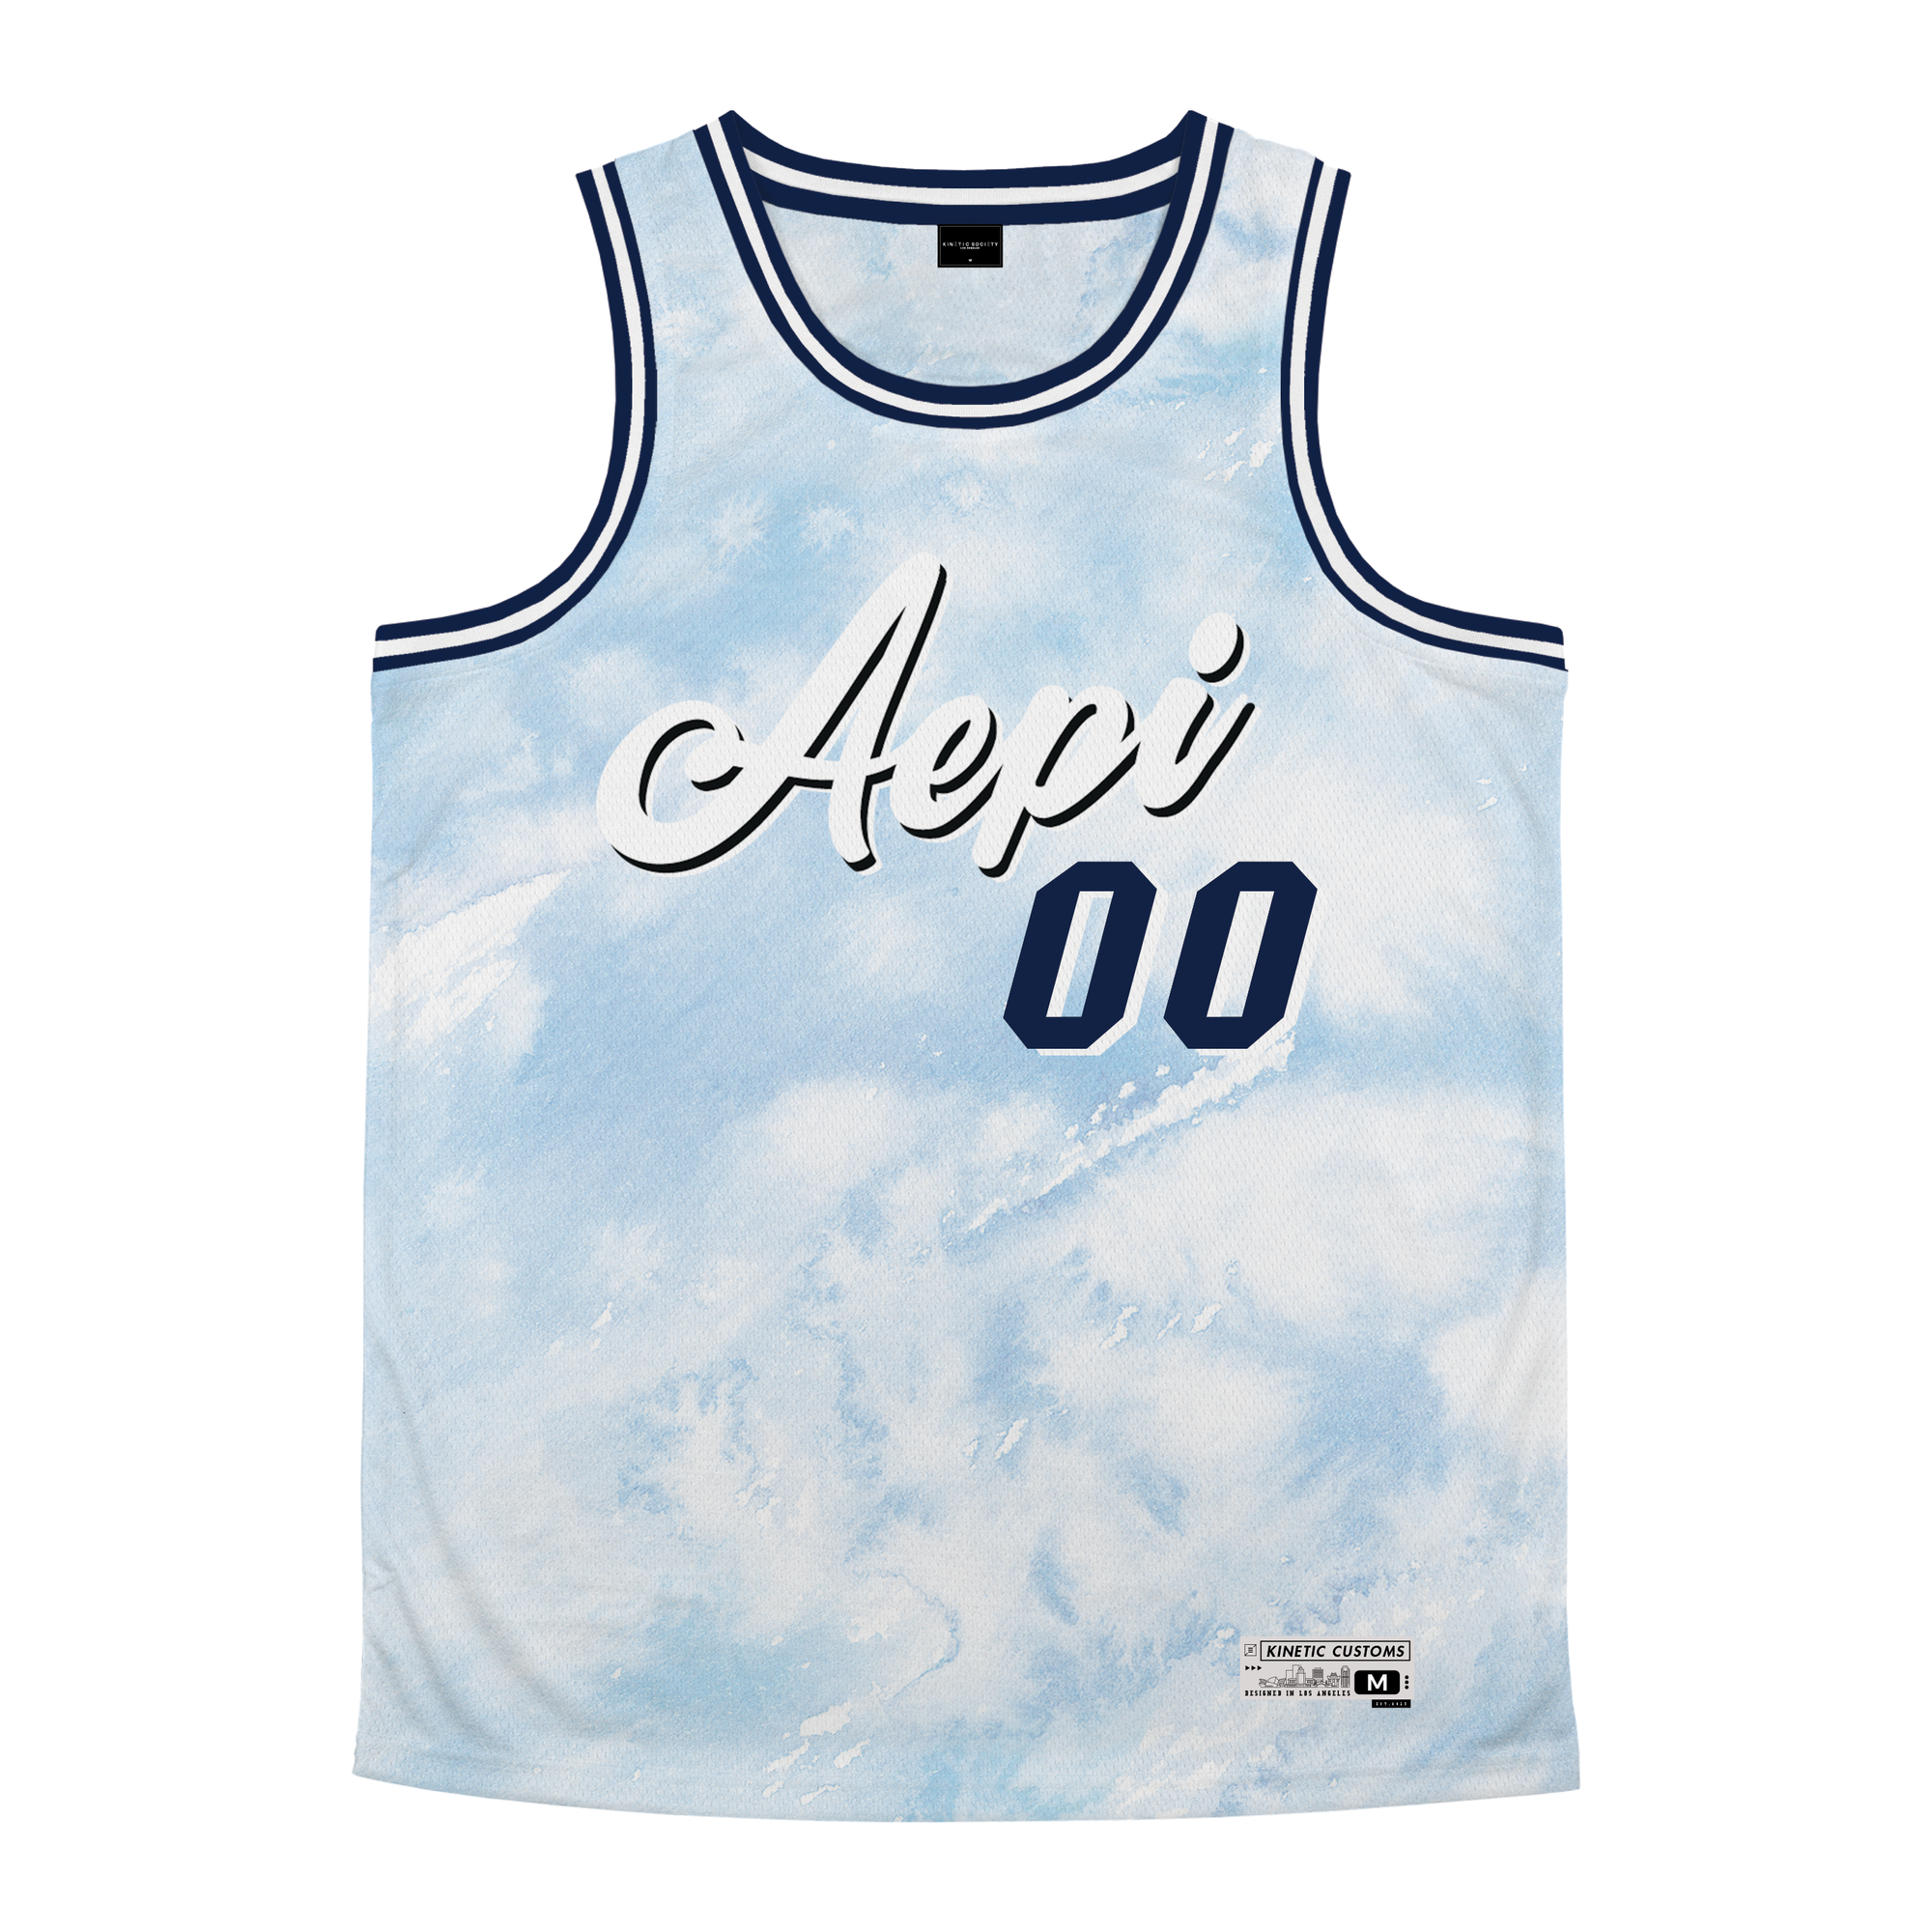 Alpha Epsilon Pi - Blue Sky Basketball Jersey